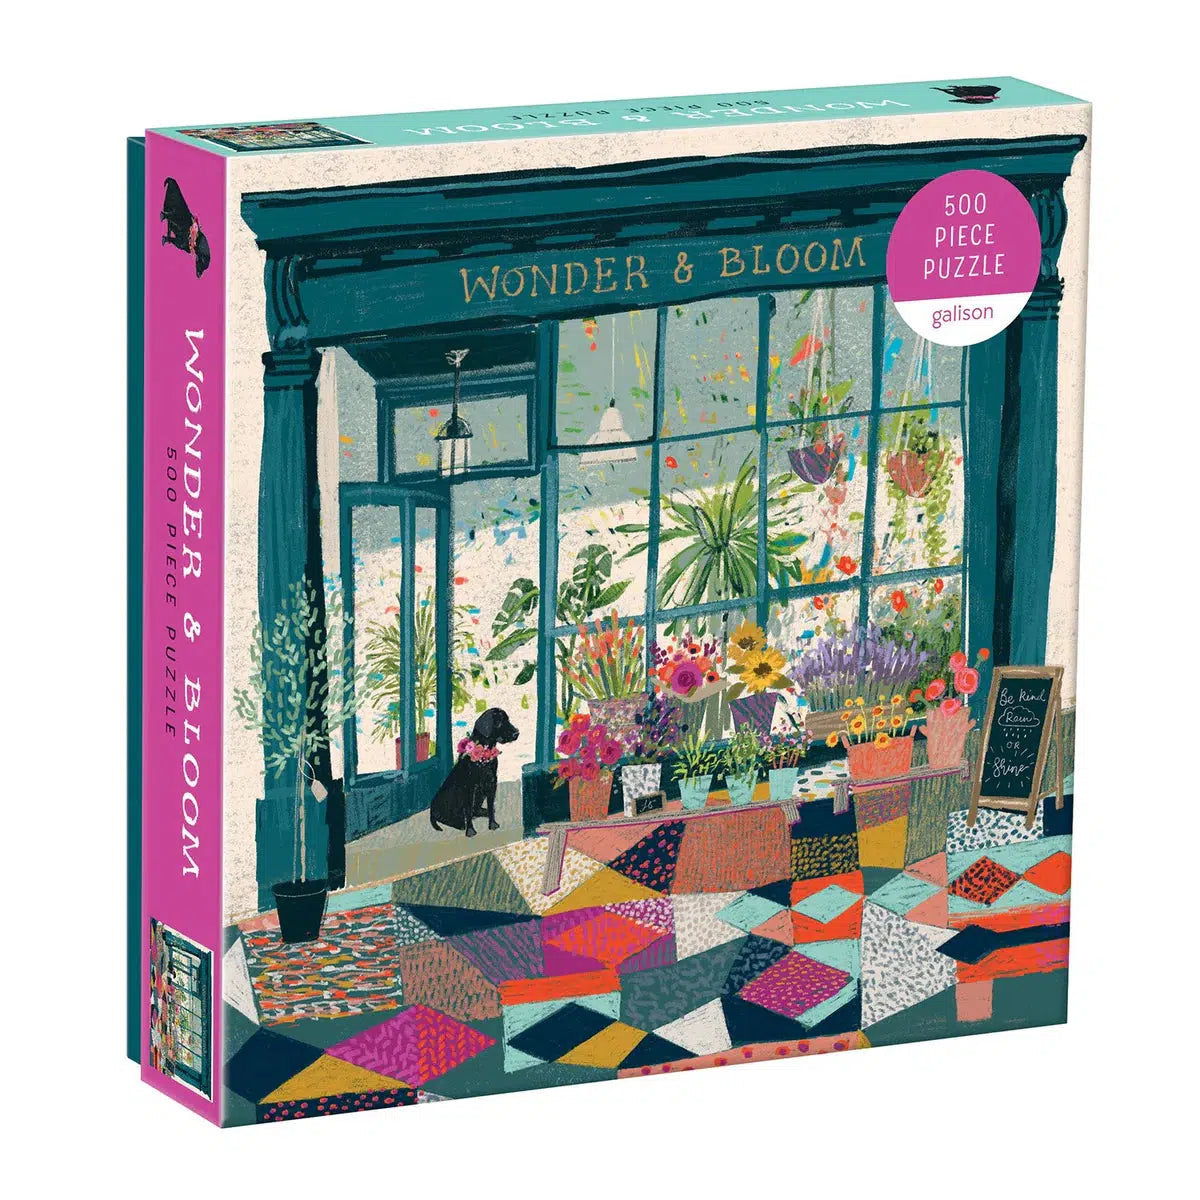 Wonder & Bloom 500 Piece Jigsaw Puzzle Galison